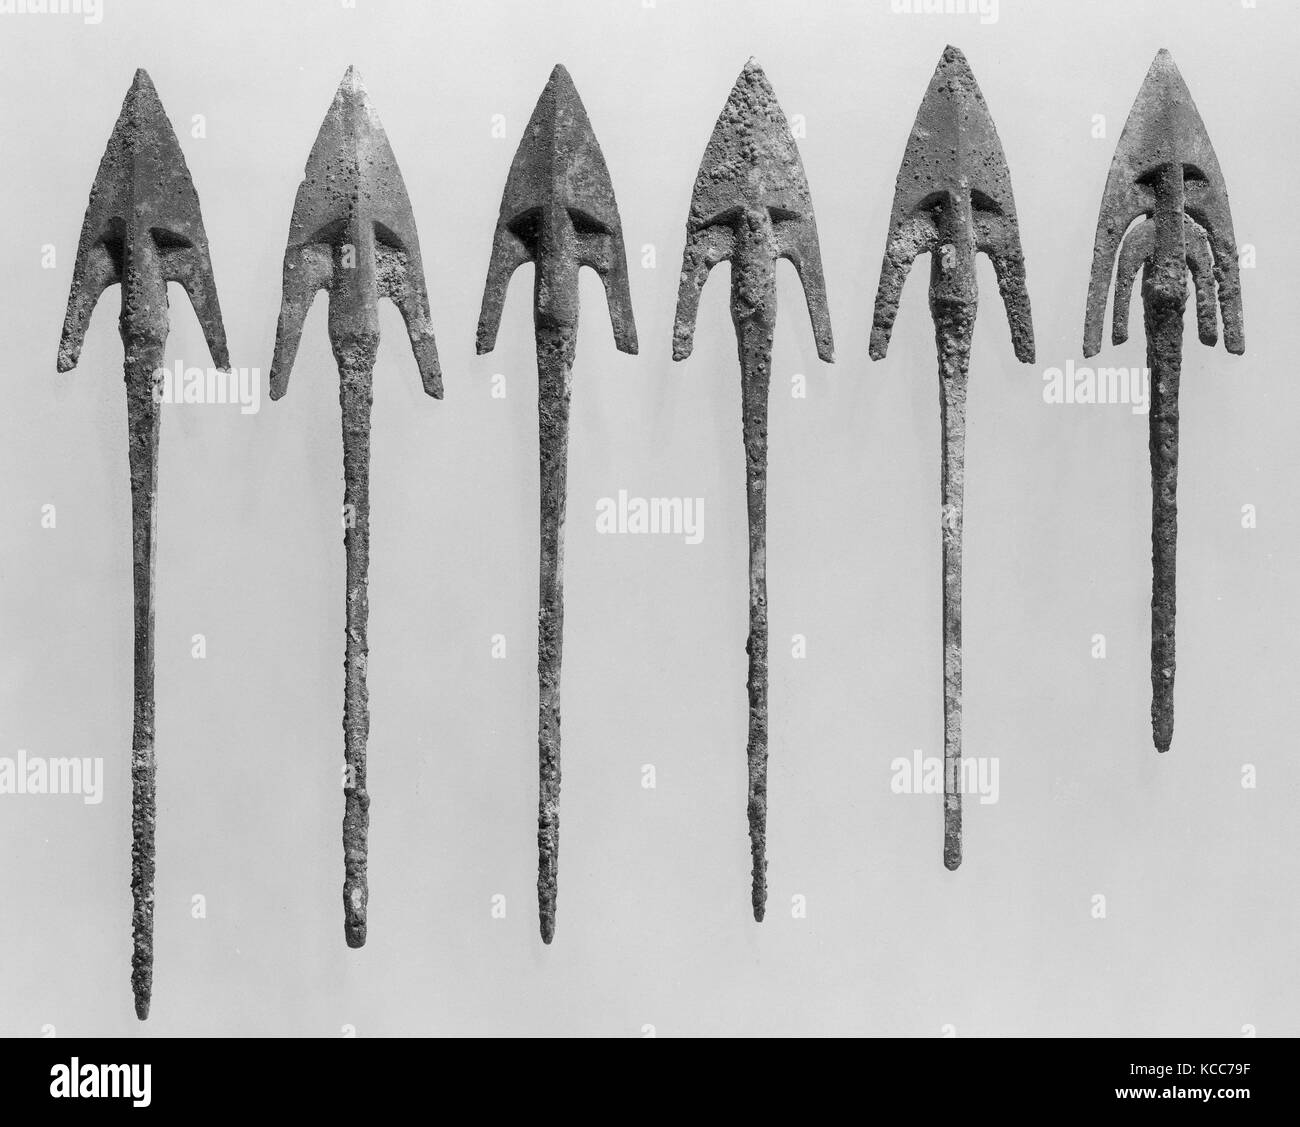 Punta de flecha, de la Edad de Hierro, ca. A principios de la 1 ª milenio B.C., Transcaucasia, bronce, L. 5. (12,6 cm x W. 1-3/8 in. (3,2 cm), metalistería Foto de stock